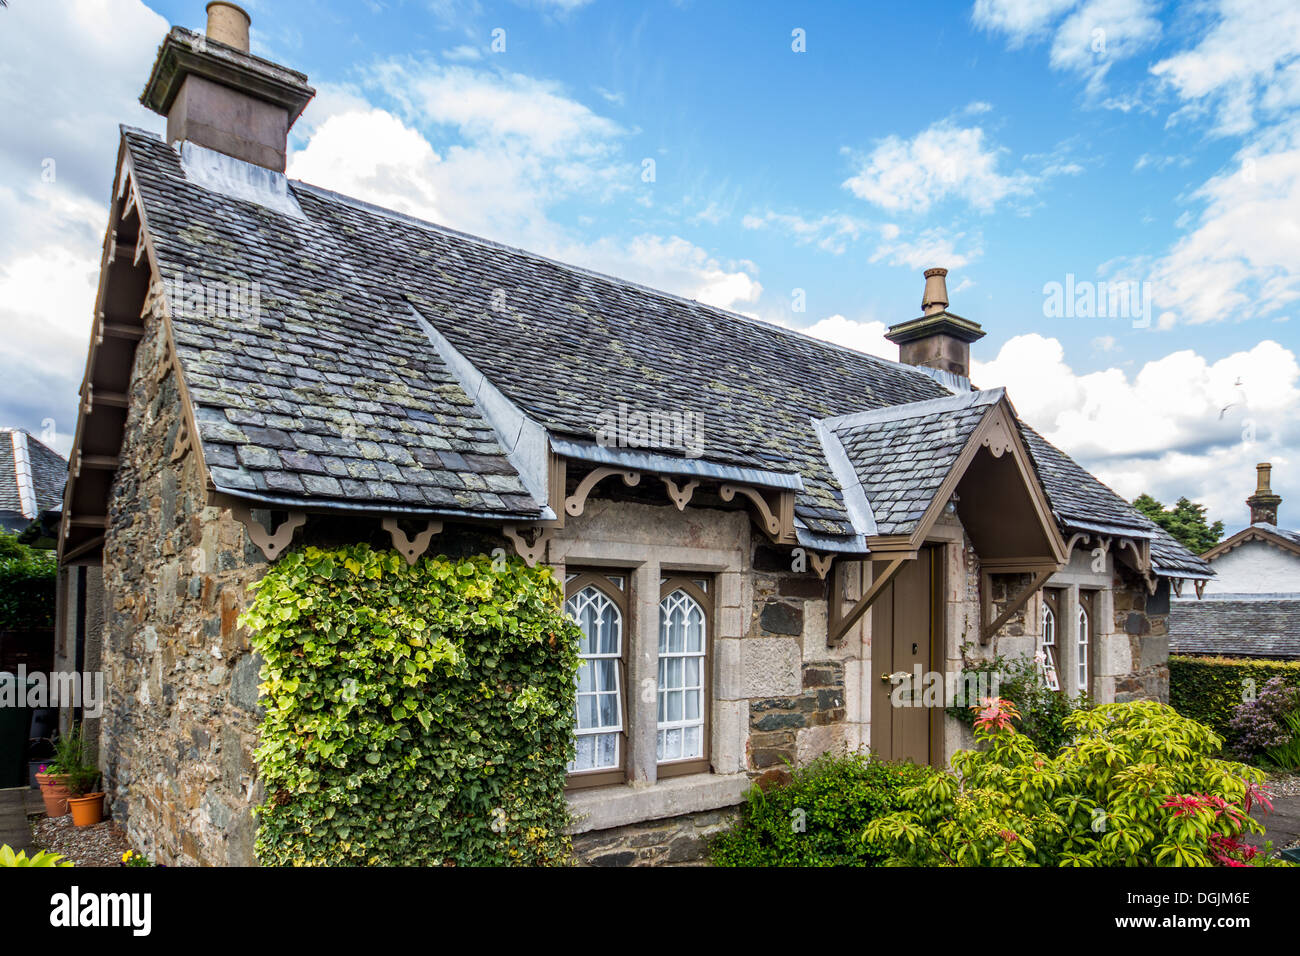 Ferienhaus in Schottland Stockfoto